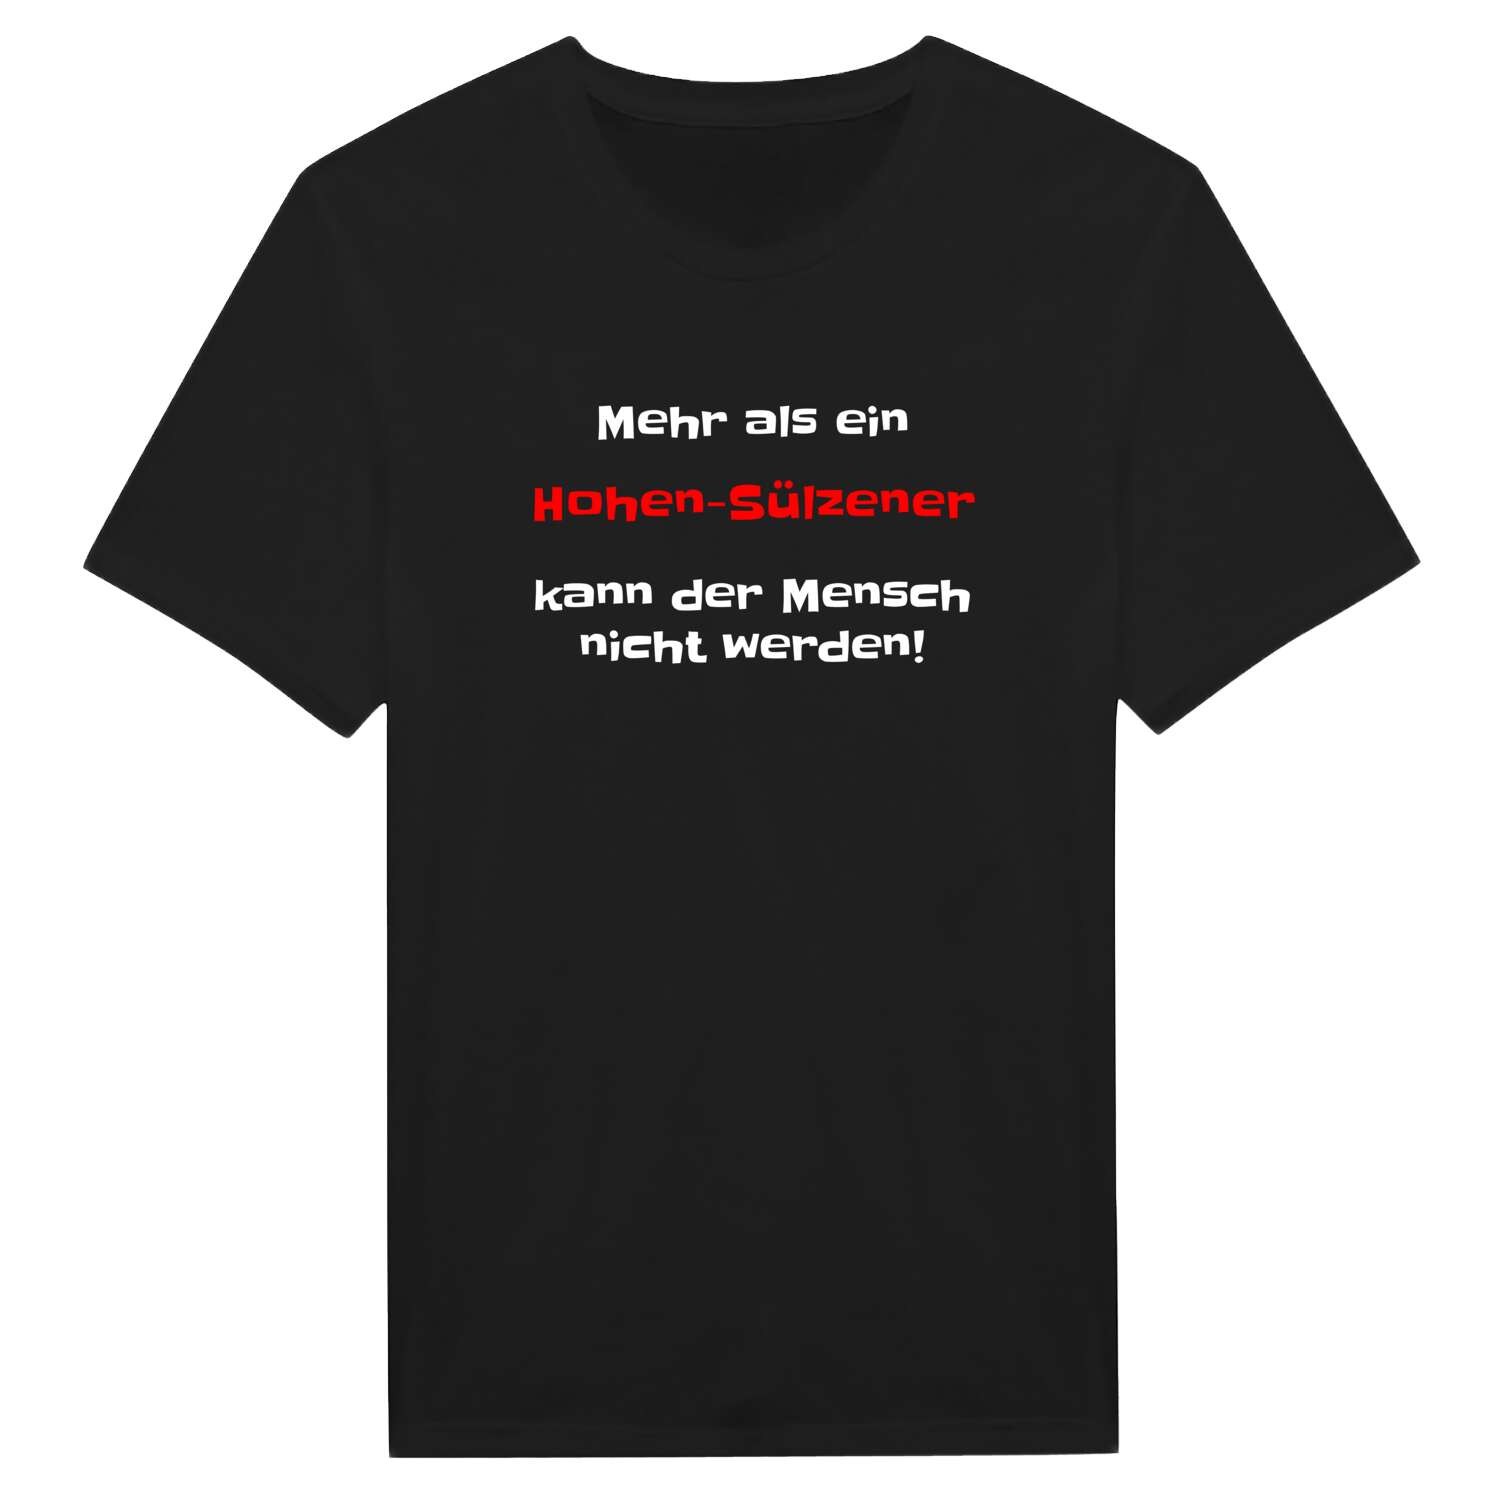 Hohen-Sülzen T-Shirt »Mehr als ein«